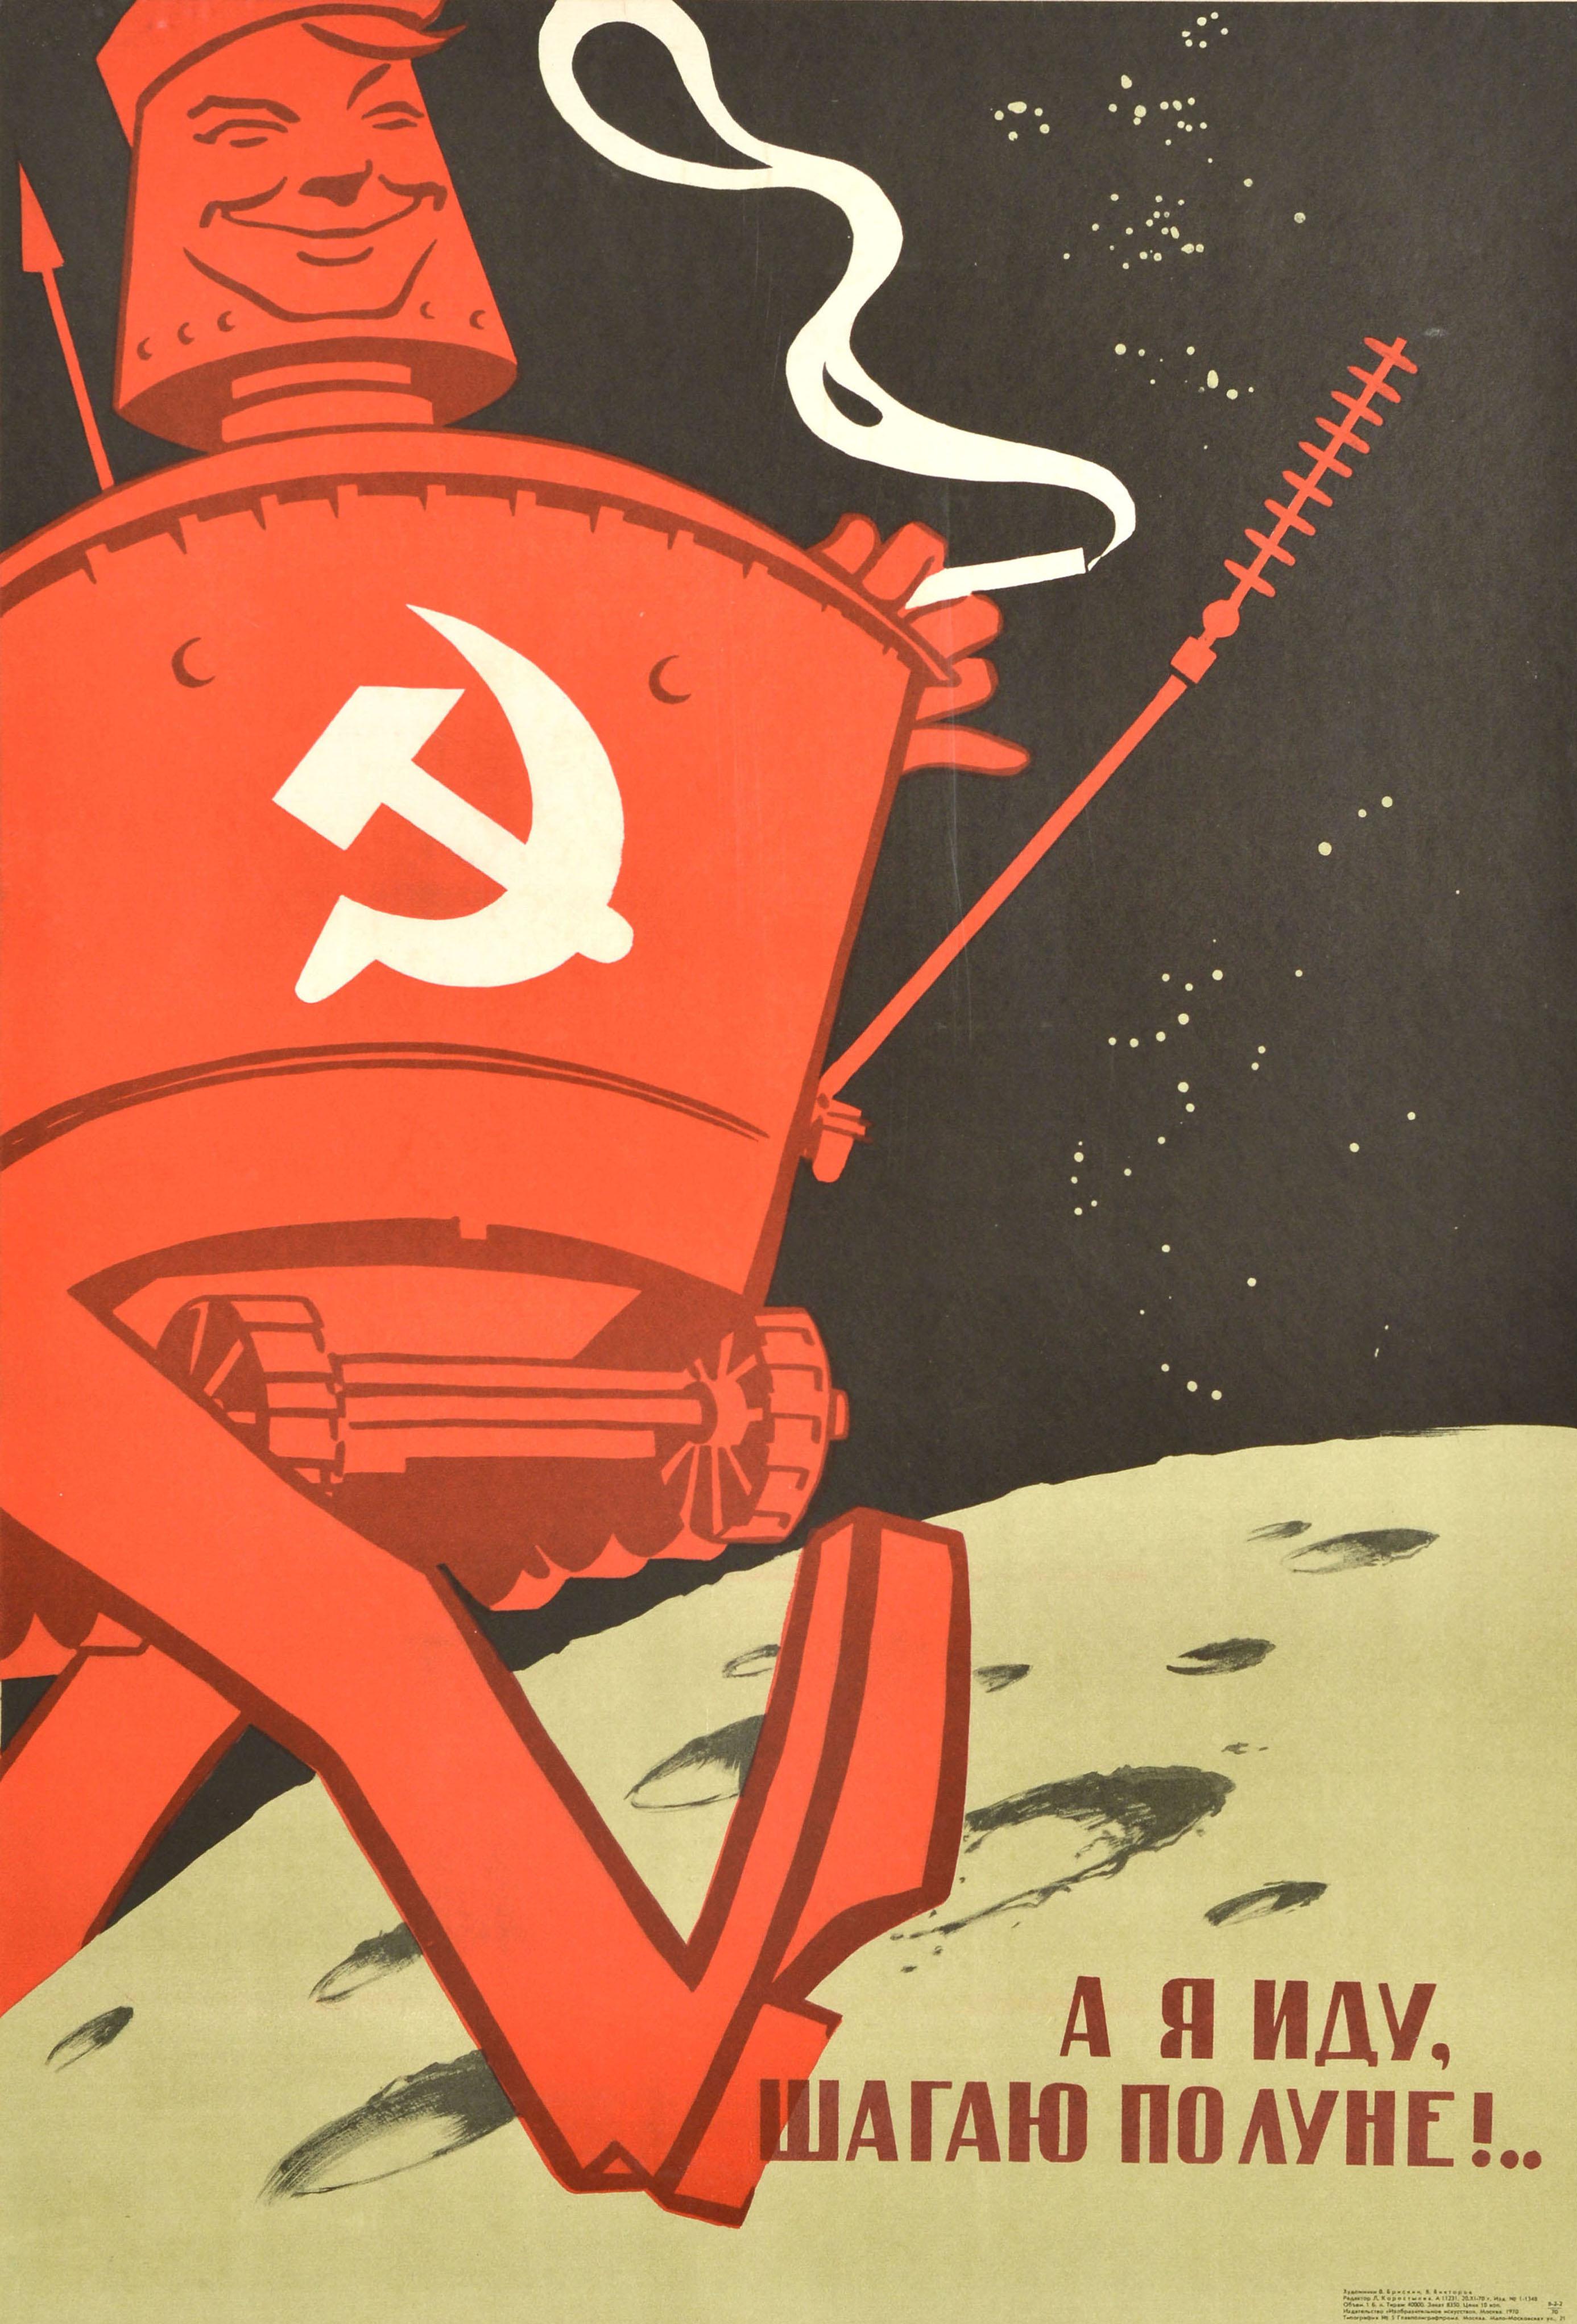 Affiche de propagande soviétique vintage originale - Je marche sur la lune ! - avec une illustration amusante d'un rover lunaire Lunokhod souriant marchant sur la lune et fumant une cigarette. La phrase imite le titre d'un film populaire de l'URSS